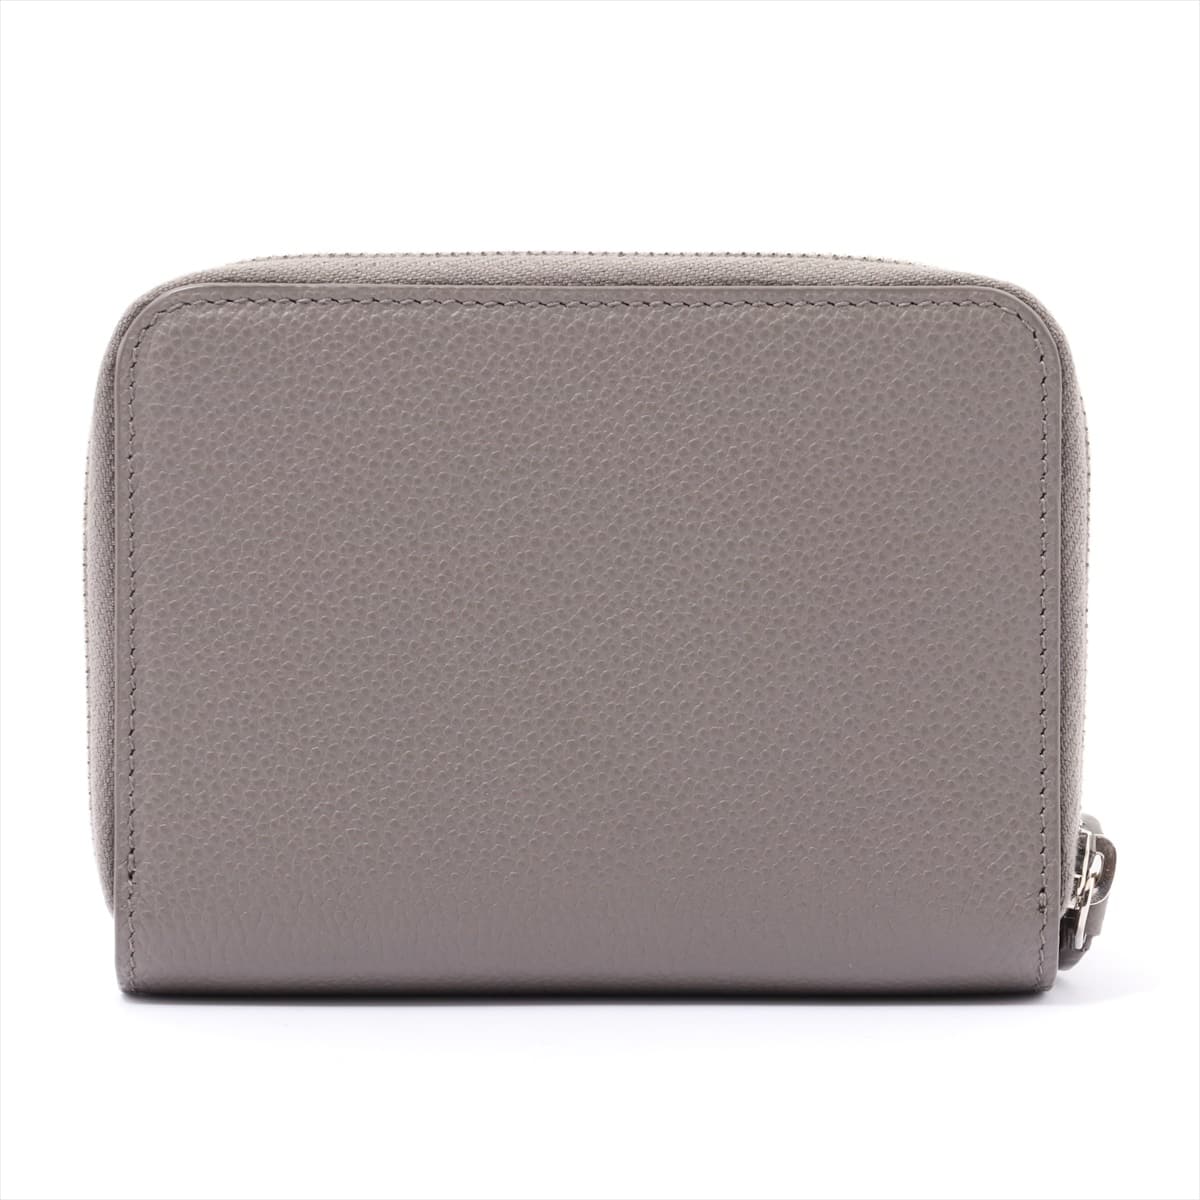 Saint Laurent Paris Classic Leather Wallet Grey